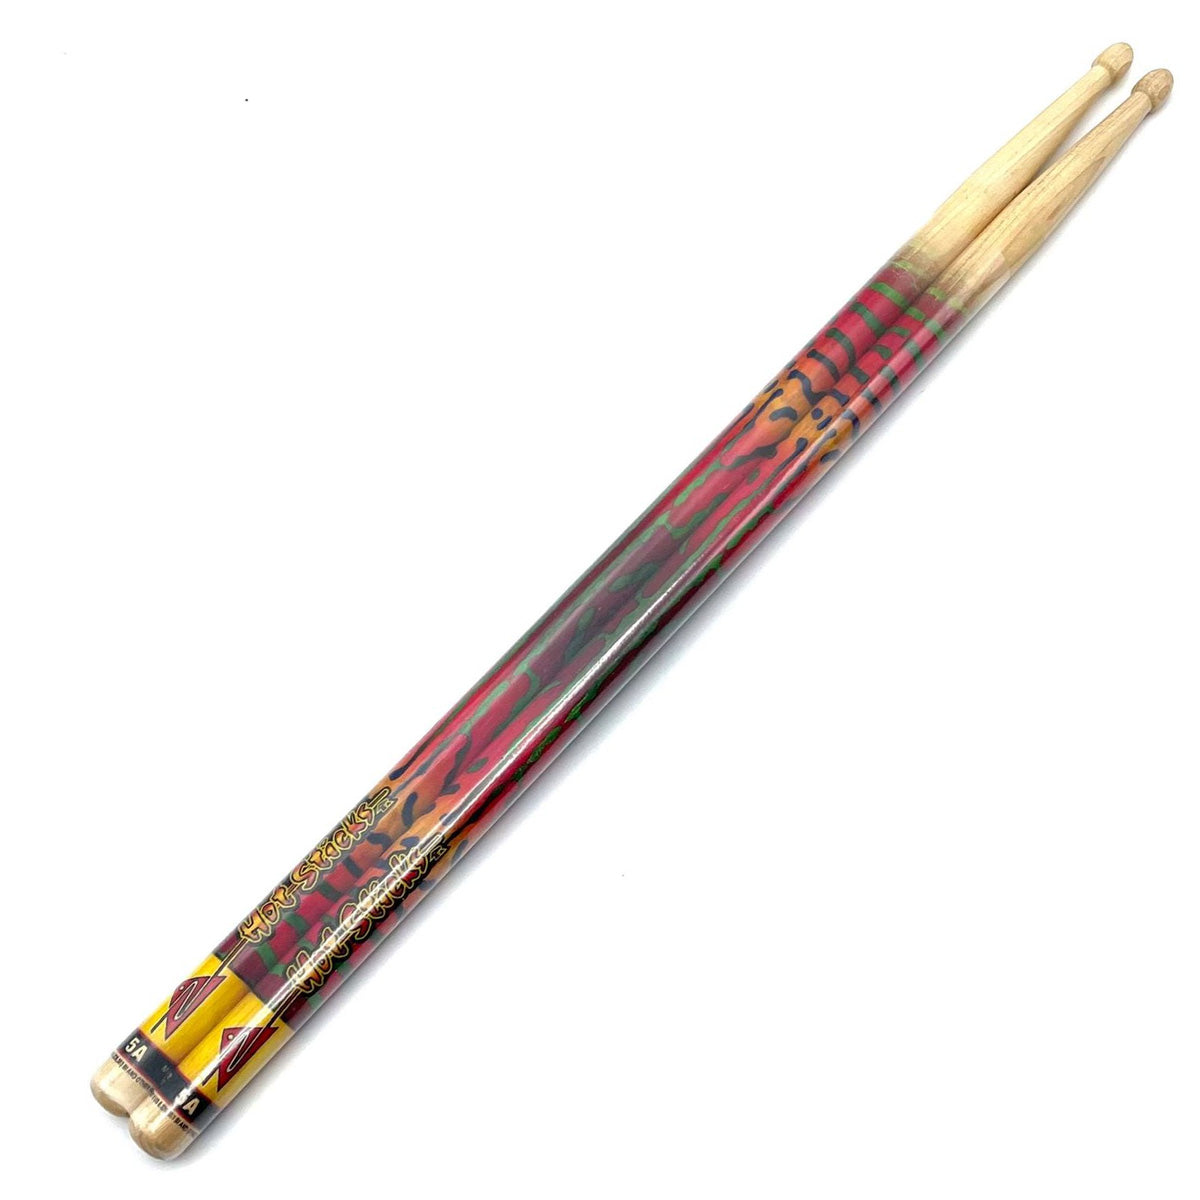 Hot Sticks Artisticks Drum Sticks - Tigerdelic